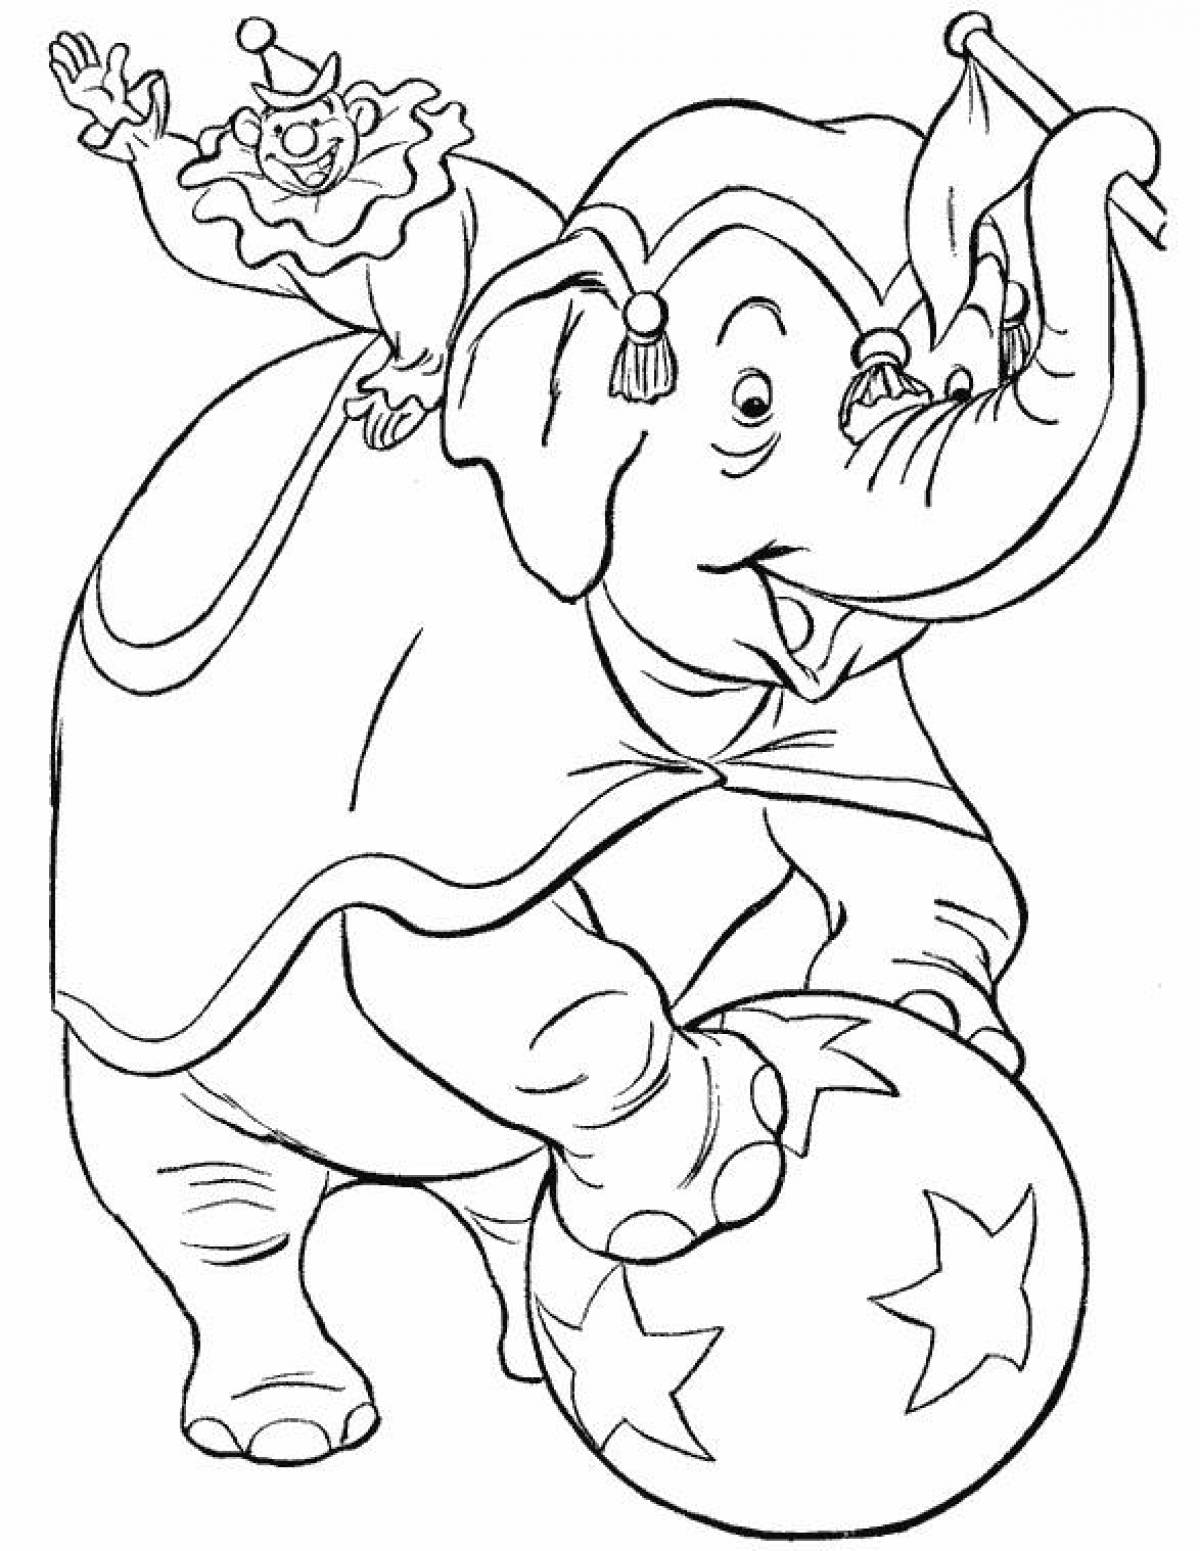 Клоун со слоном